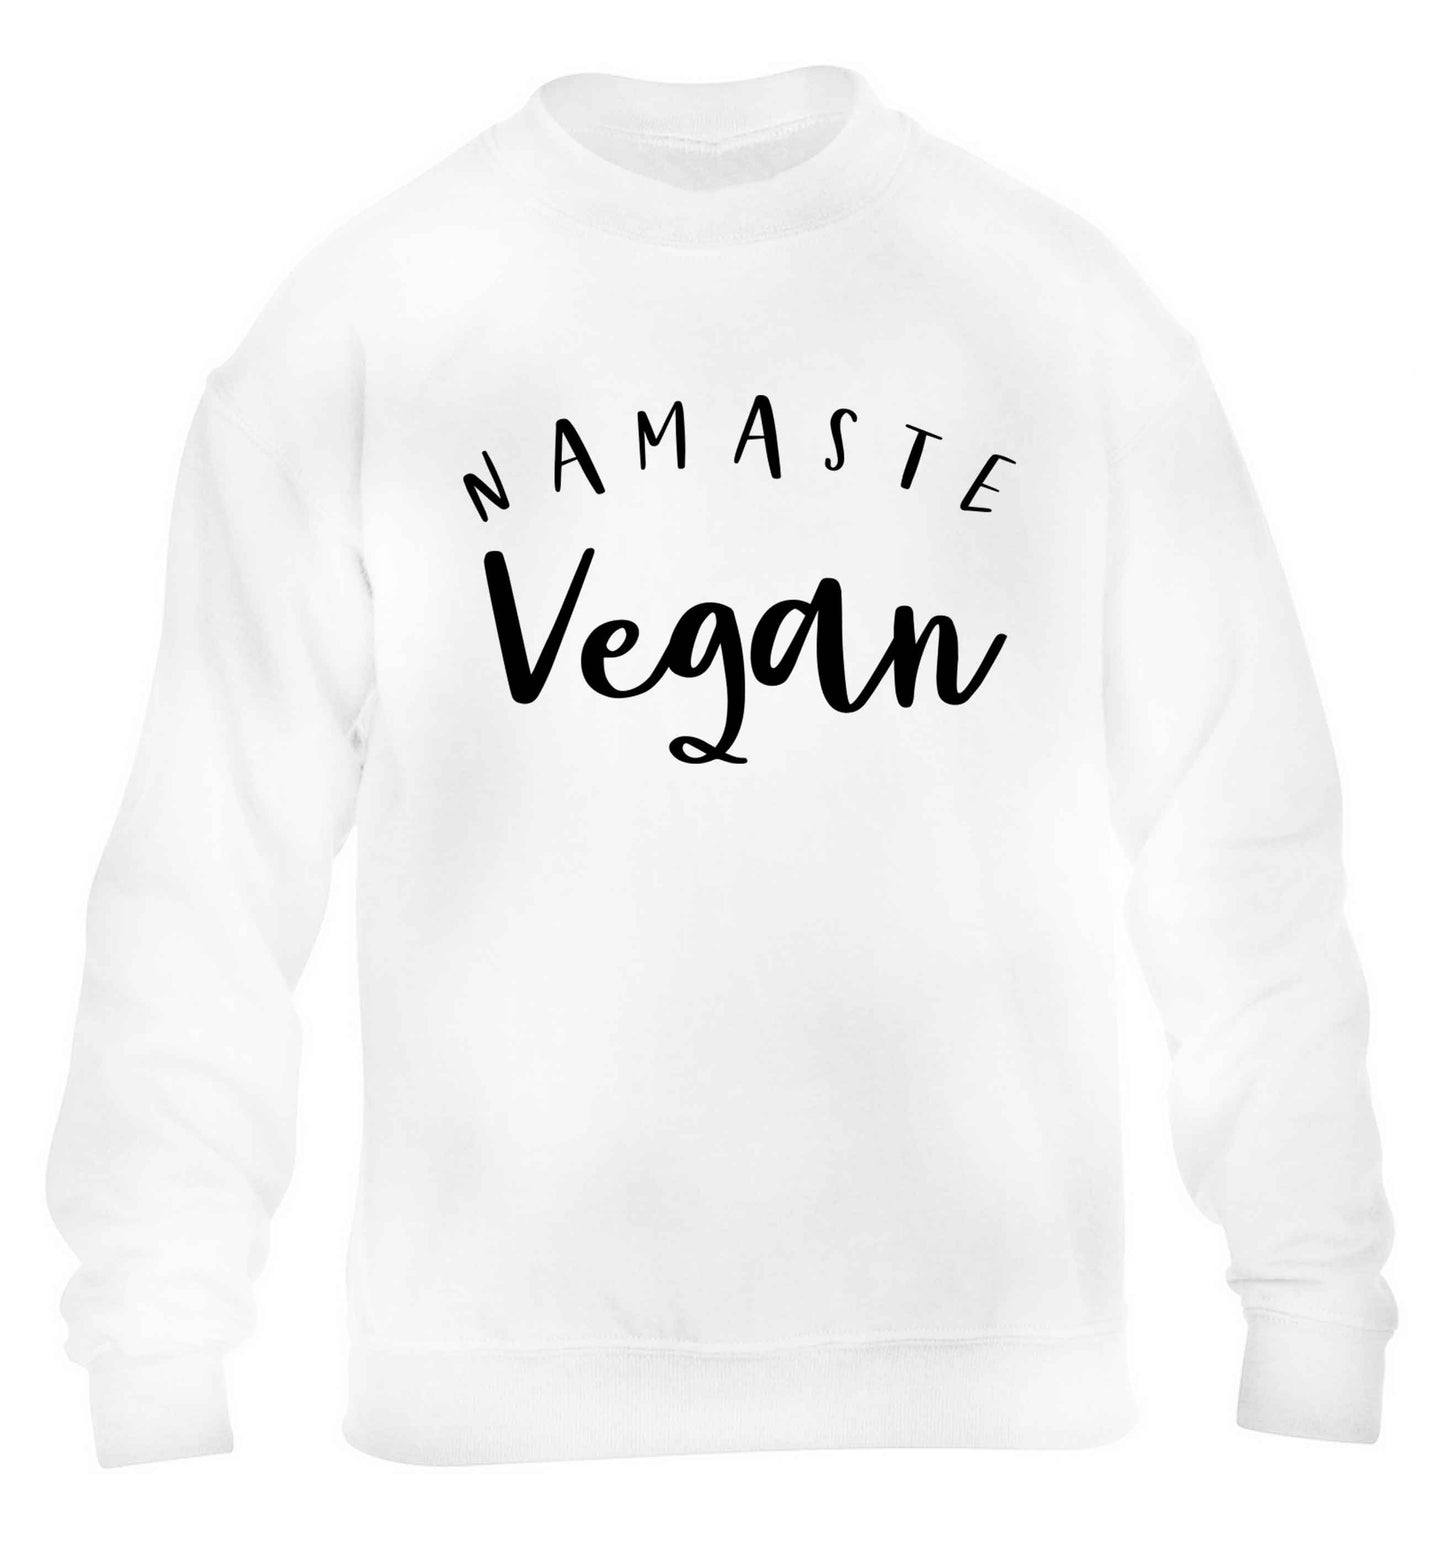 Namaste vegan children's white sweater 12-13 Years